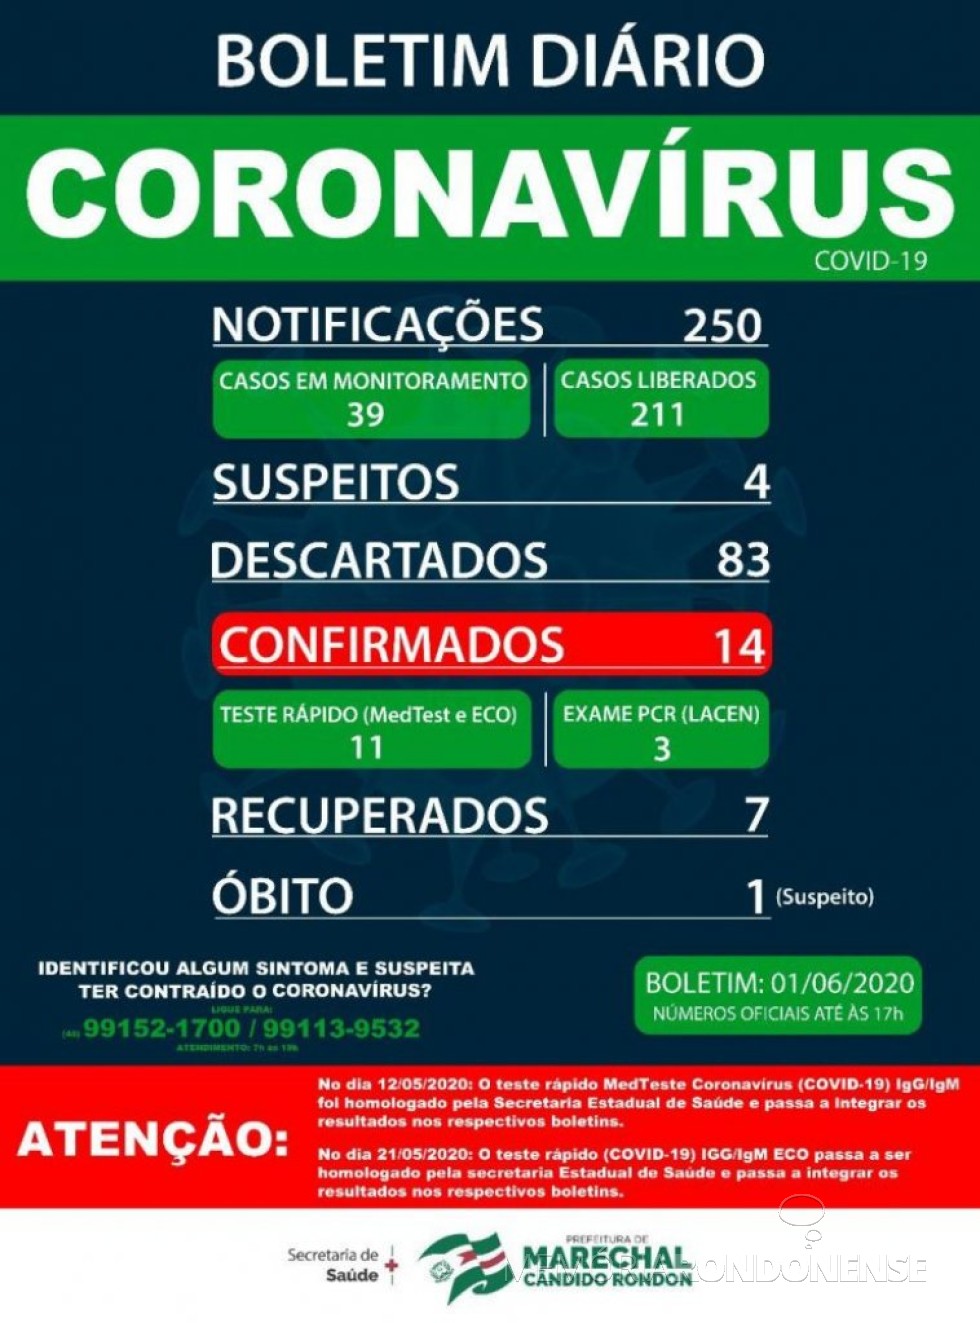 Boletim epidemiológico da Secretaria de Saúde de Marechal Cândido Rondon o aumento de 11 para 14 casos confirmados de coronavírus, um aumento de três psotivados em relação ao dia anterior.
Imagem: Acervo Imprensa PM-MCR - FOTO 16 -